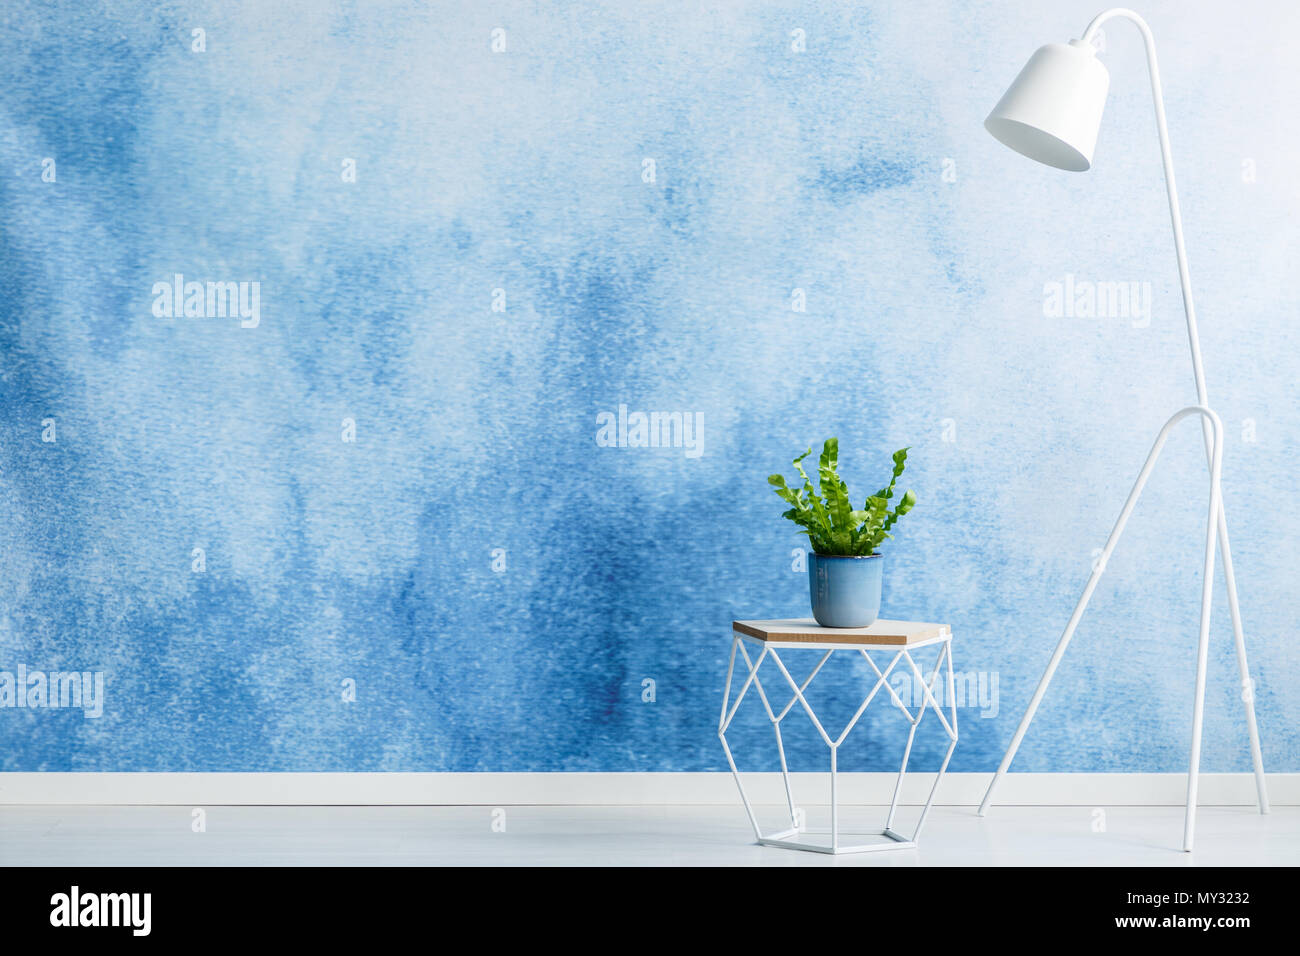 Leere wand für die Produktplatzierung, Hocker mit einer Pflanze und weiße Lampe im Wohnzimmer Innenraum Stockfoto